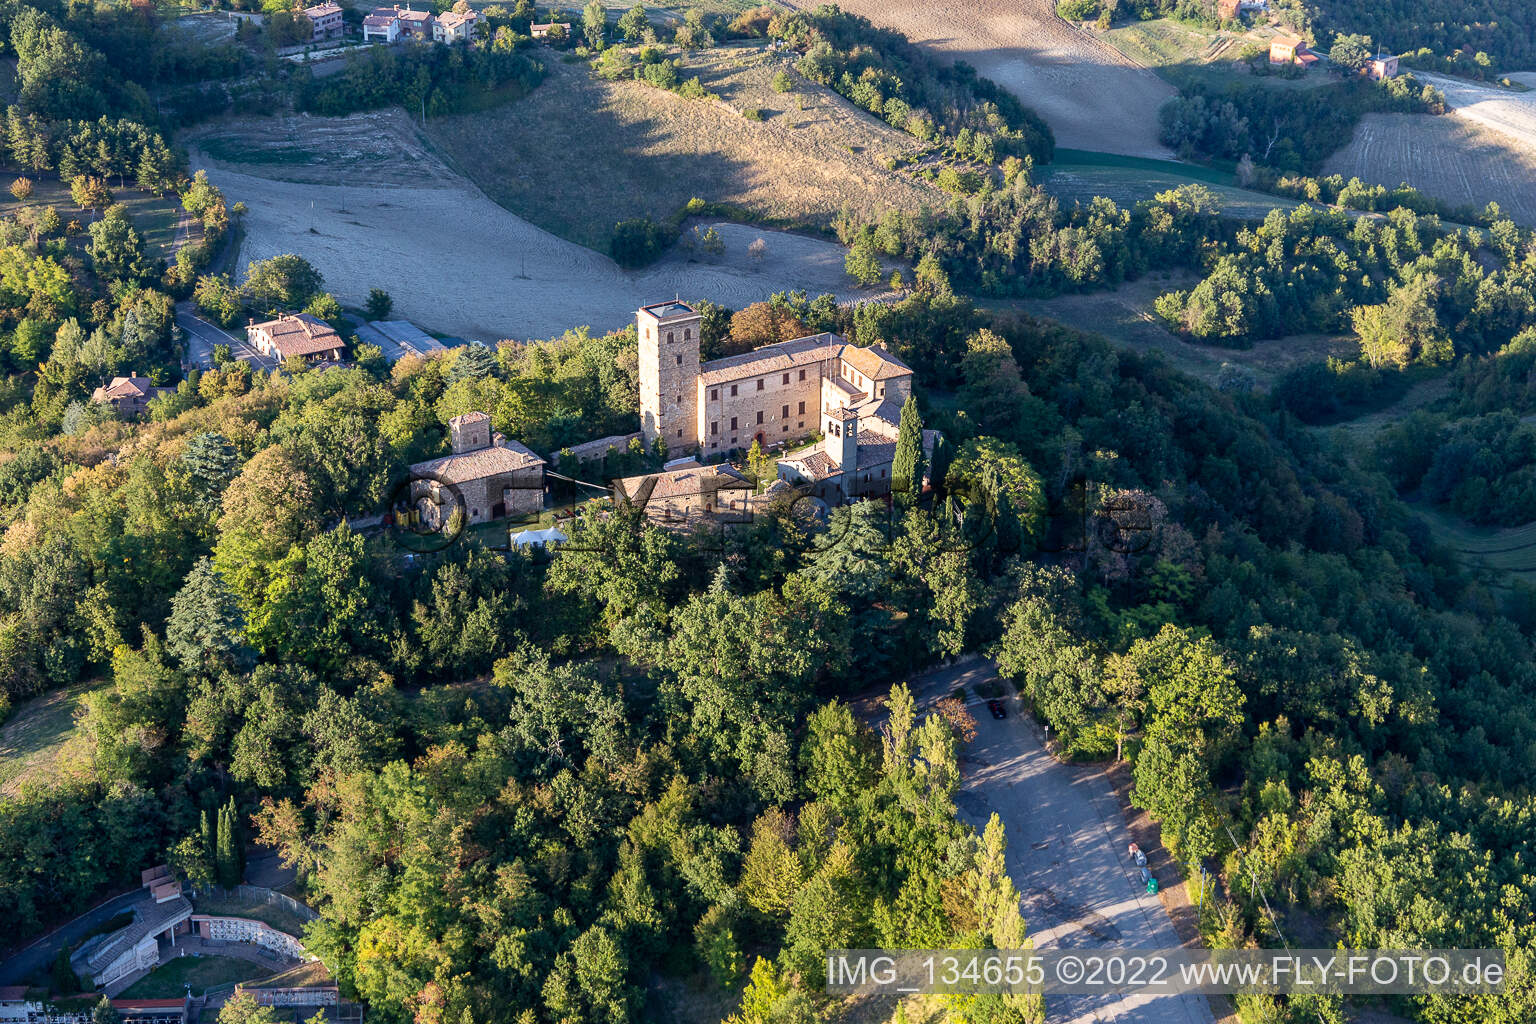 Montegibbio Castle Castello di Montegibbio in Sassuolo in the state Modena, Italy seen from above